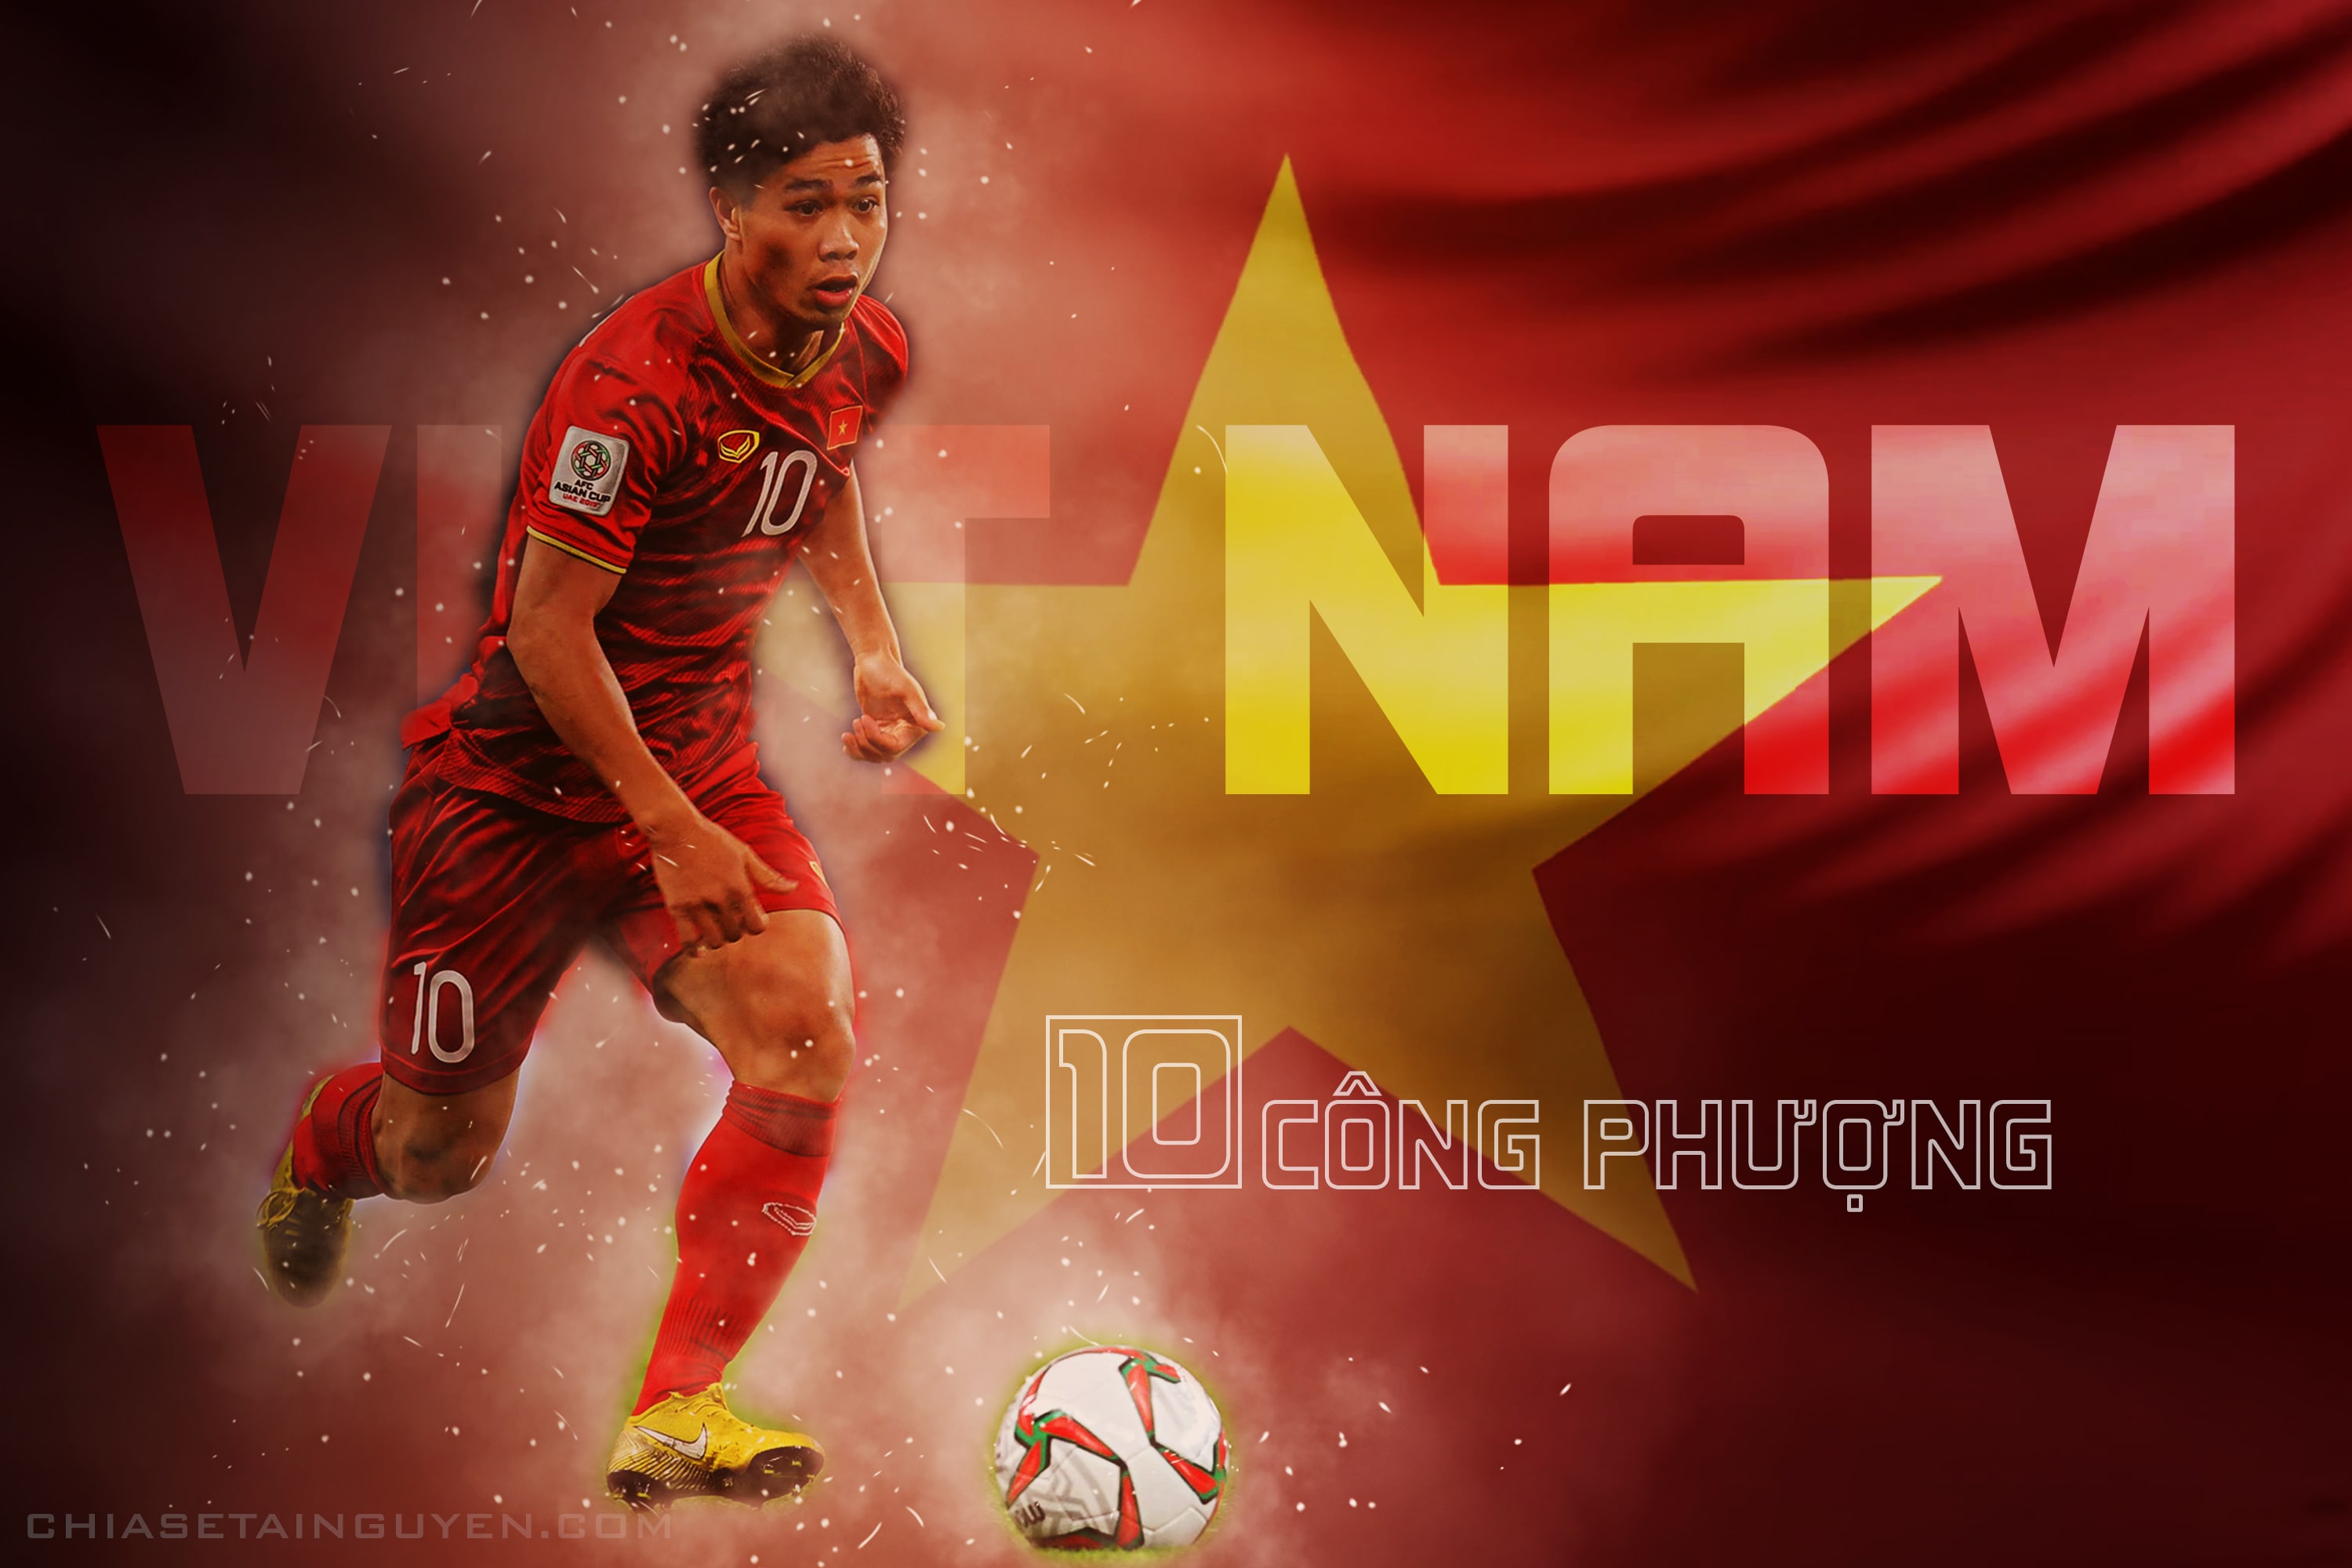 Mới nhất bộ banner cổ vũ bóng đá Việt Nam chinh phục Asian Cup 2019